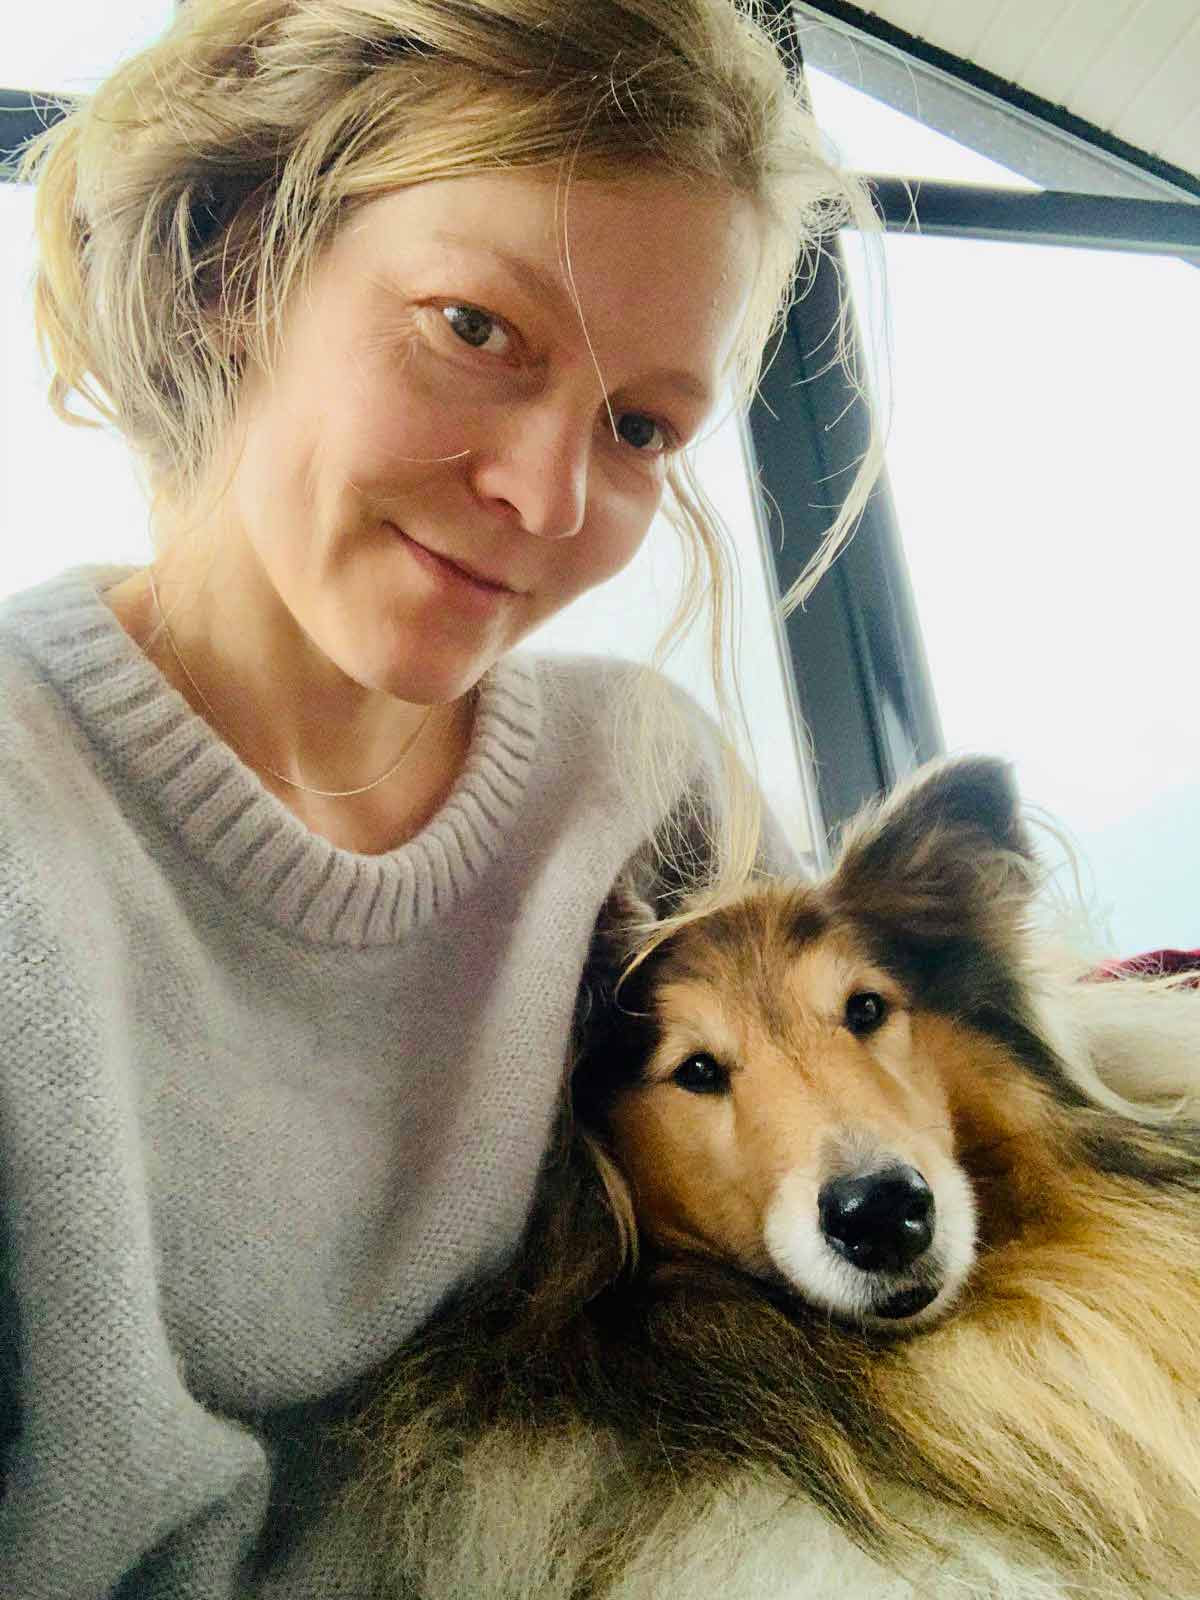 Kundin der Tierkommunikatorin, Katja, schaut mit ihrem Collie Hund Joschi liebevoll und dankbar in die Kamera.